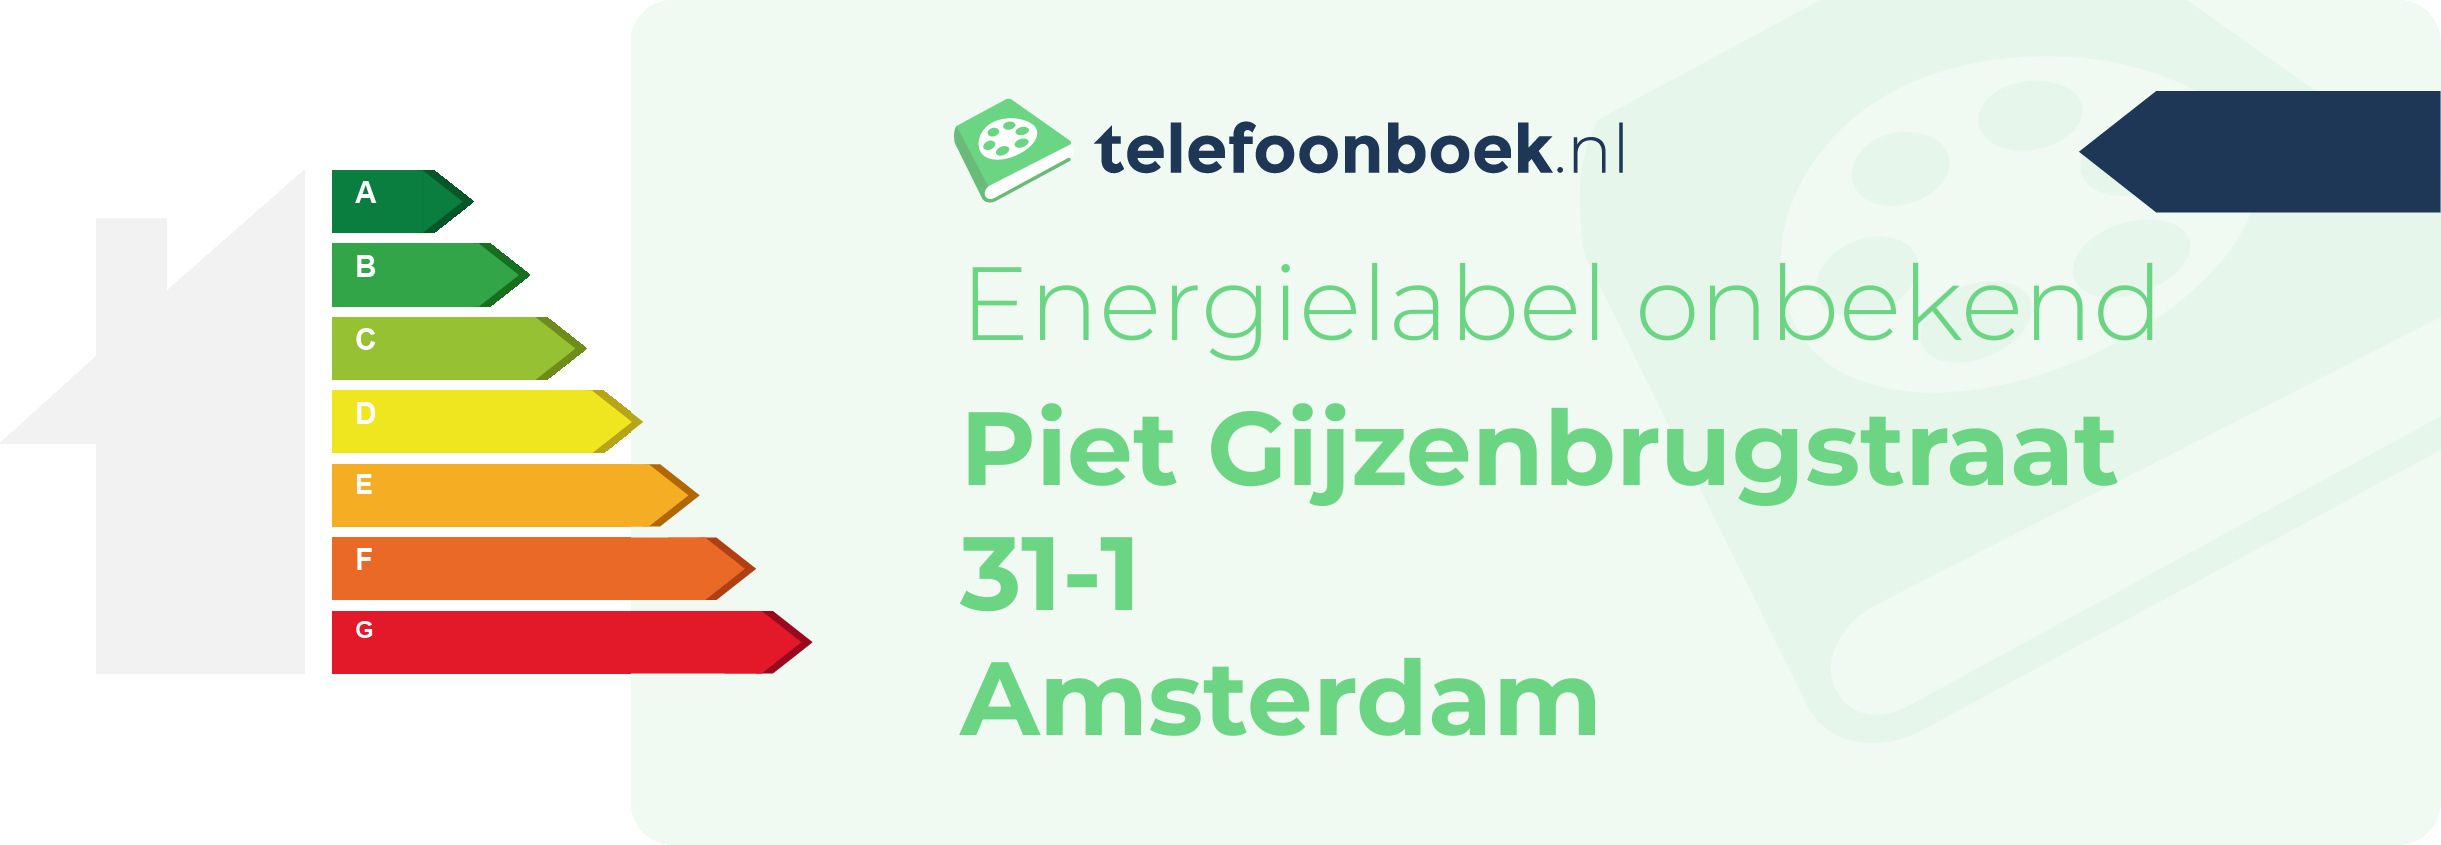 Energielabel Piet Gijzenbrugstraat 31-1 Amsterdam